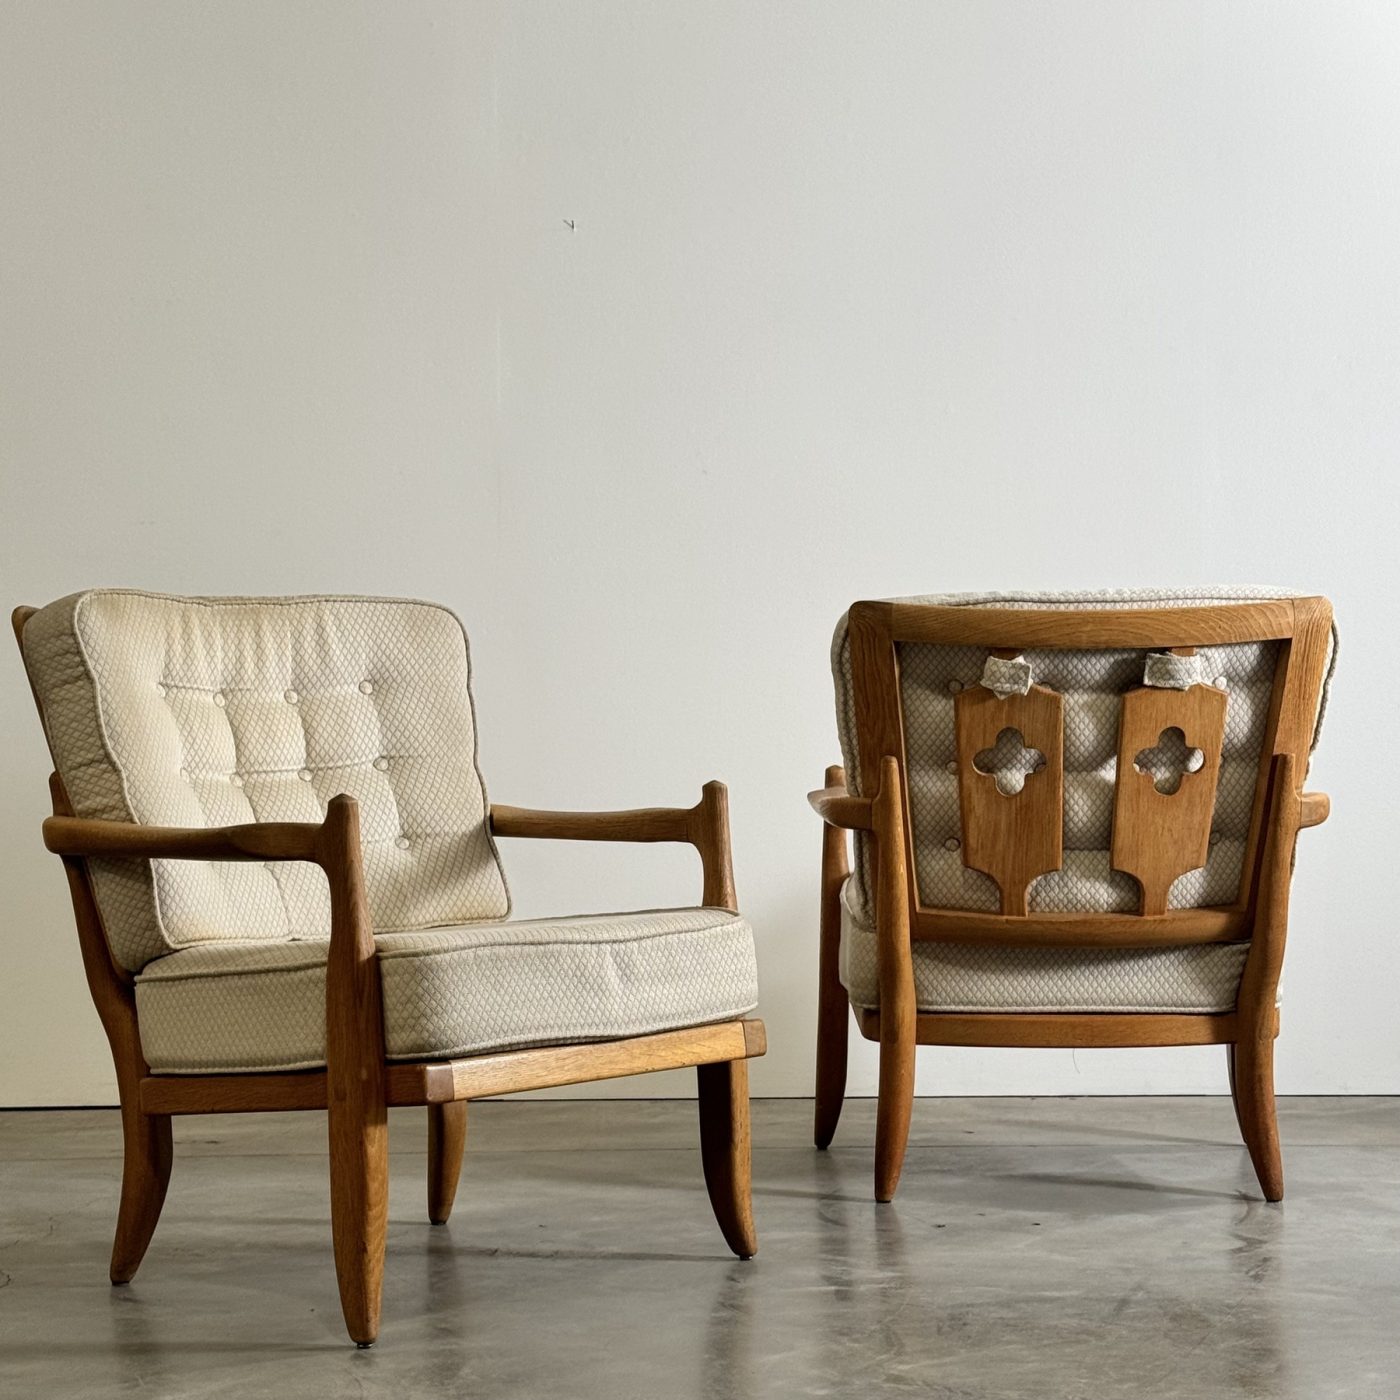 objet-vagabond-guillerme-armchairs0003